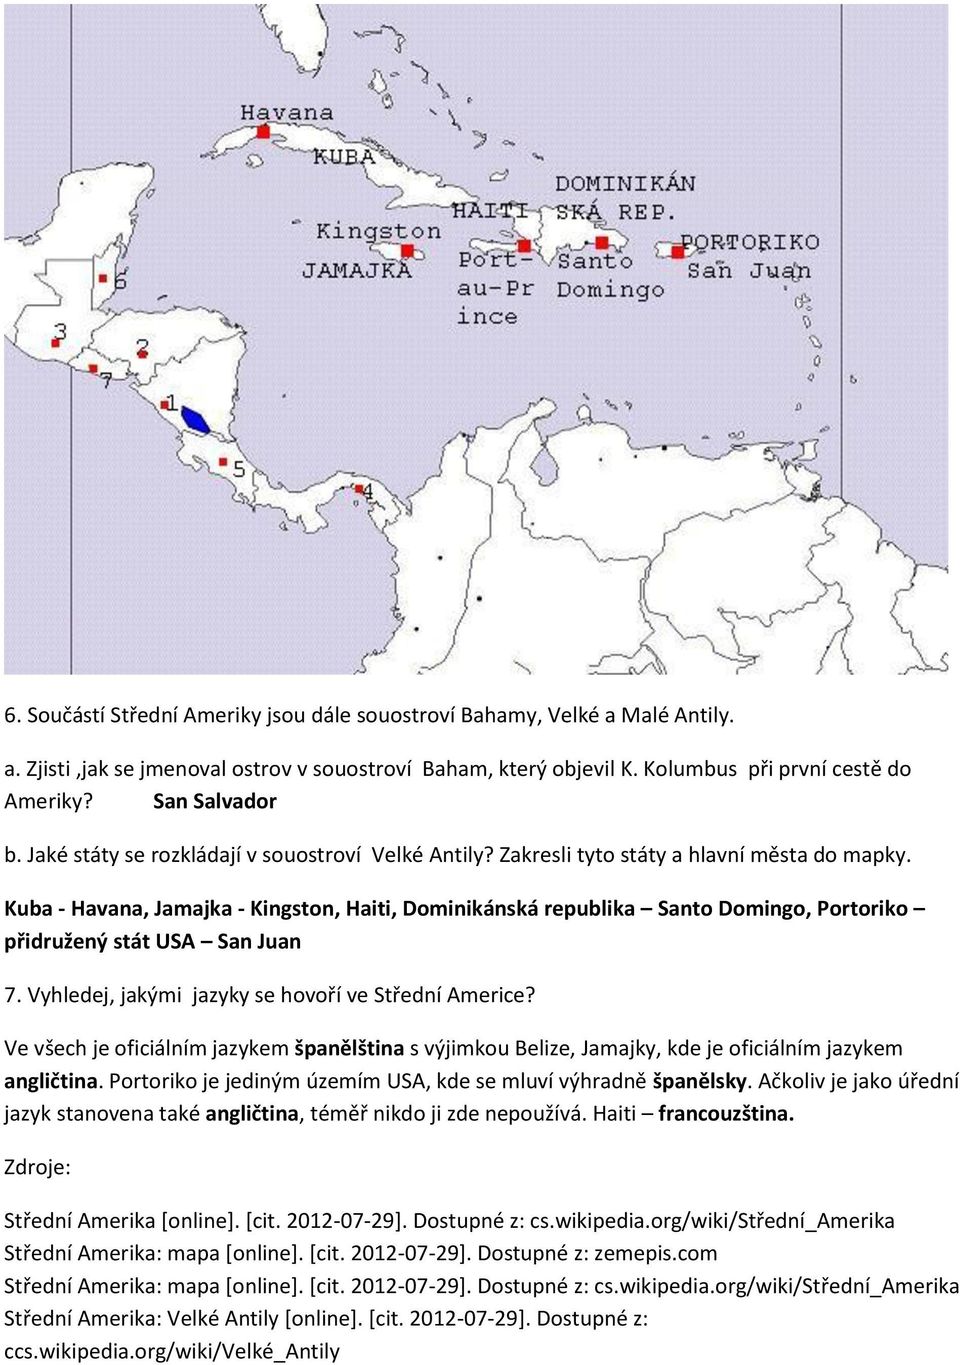 Kuba - Havana, Jamajka - Kingston, Haiti, Dominikánská republika Santo Domingo, Portoriko přidružený stát USA San Juan 7. Vyhledej, jakými jazyky se hovoří ve Střední Americe?